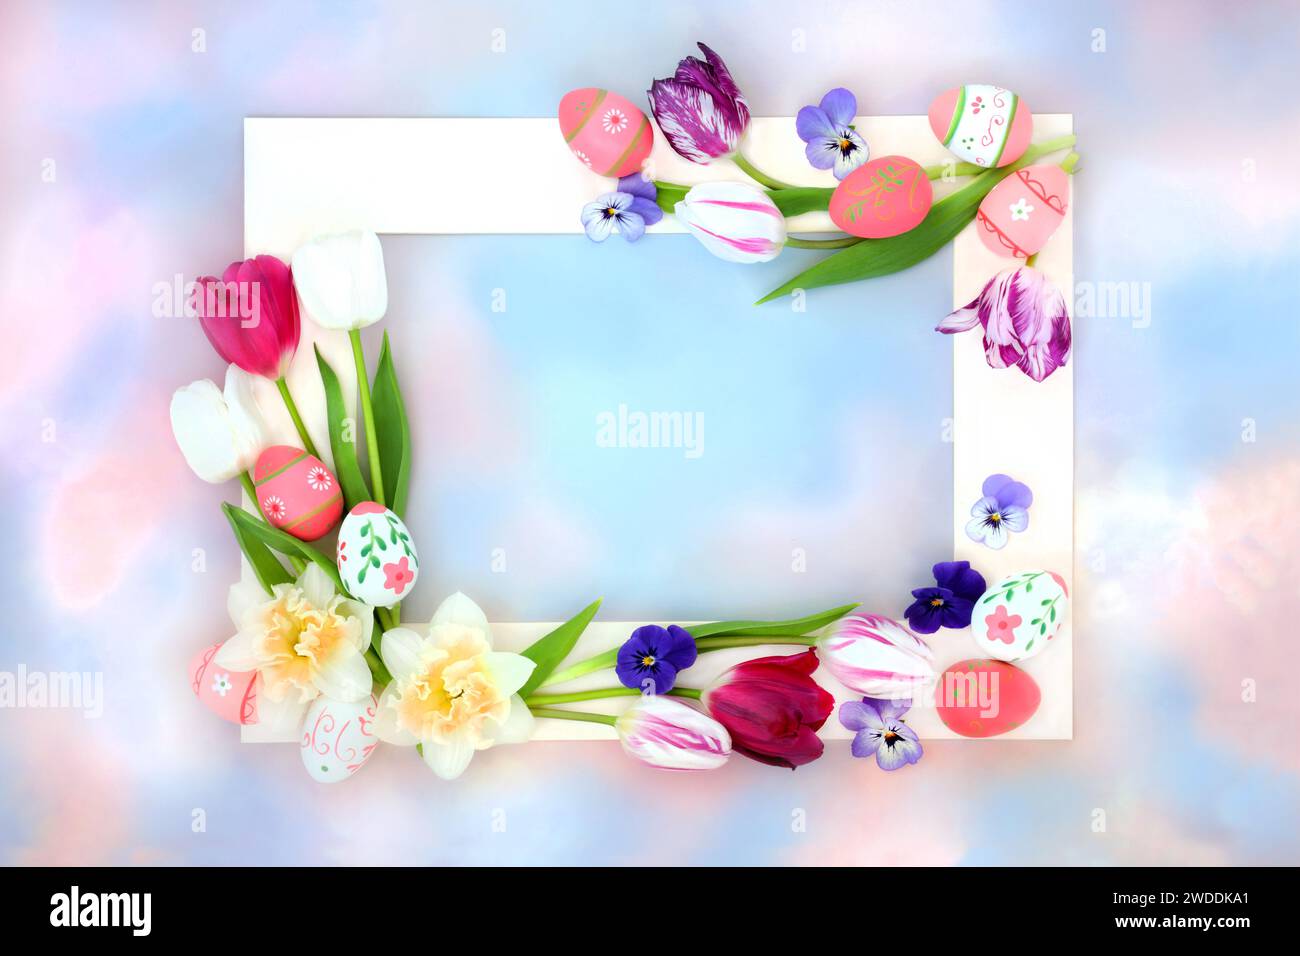 Blumen- und dekorative Ostereier-Hintergrundrand mit Eiern und Frühlingsblumen auf pastellblauer und rosa Himmelwolke. Natürliches Design für den Frühling. Stockfoto